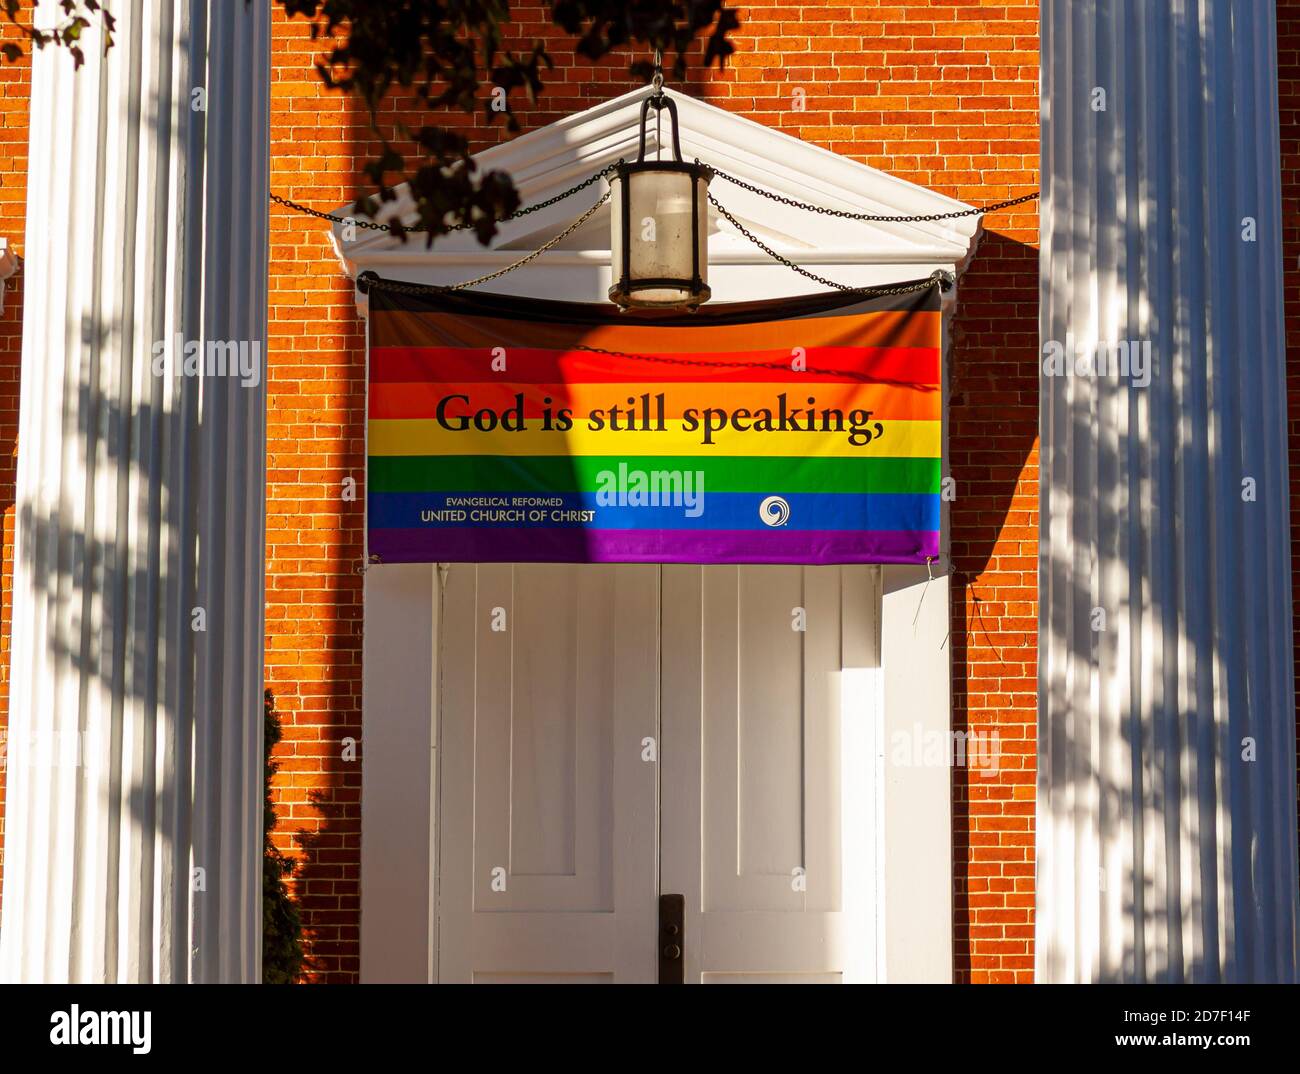 Frederick, MD, USA 10/13/2020: Nahaufnahme der Eingangstür der Evangelisch-Reformierten Vereinigten Kirche Christi mit einer großen LGBT-Flagge, die G sagt Stockfoto